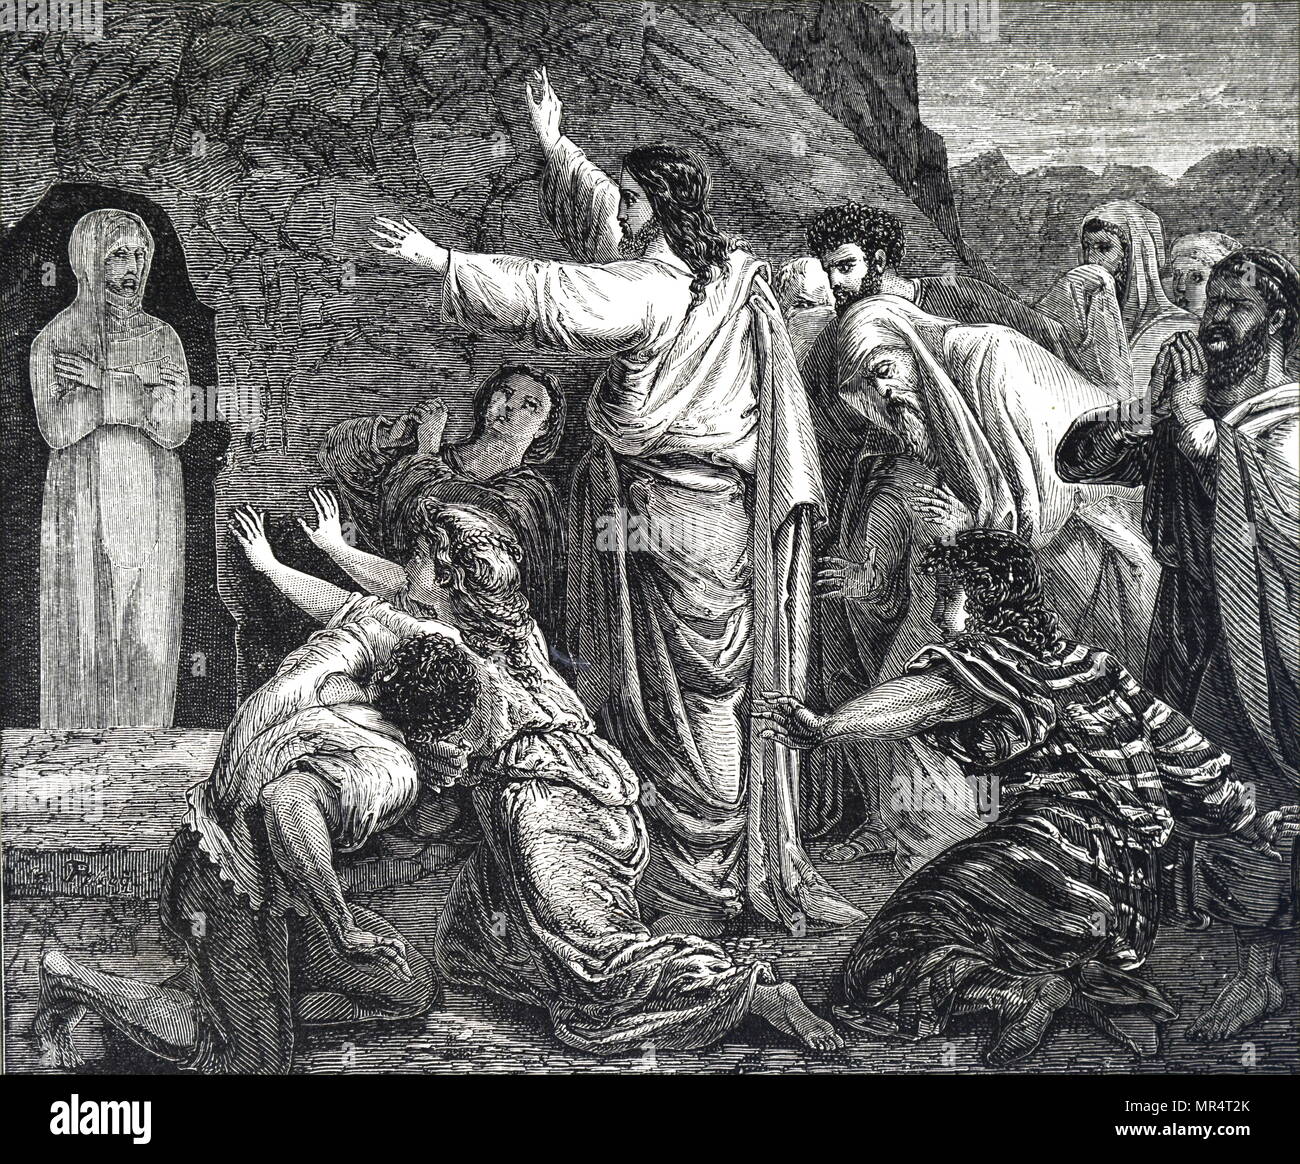 Kupferstich mit der Darstellung der Auferweckung des Lazarus. Jesus stellt sich Lazarus, der Bruder von Martha und Maria, der von den Toten nach der Verstorbenen, für 4 Tage. Vom 19. Jahrhundert Stockfoto